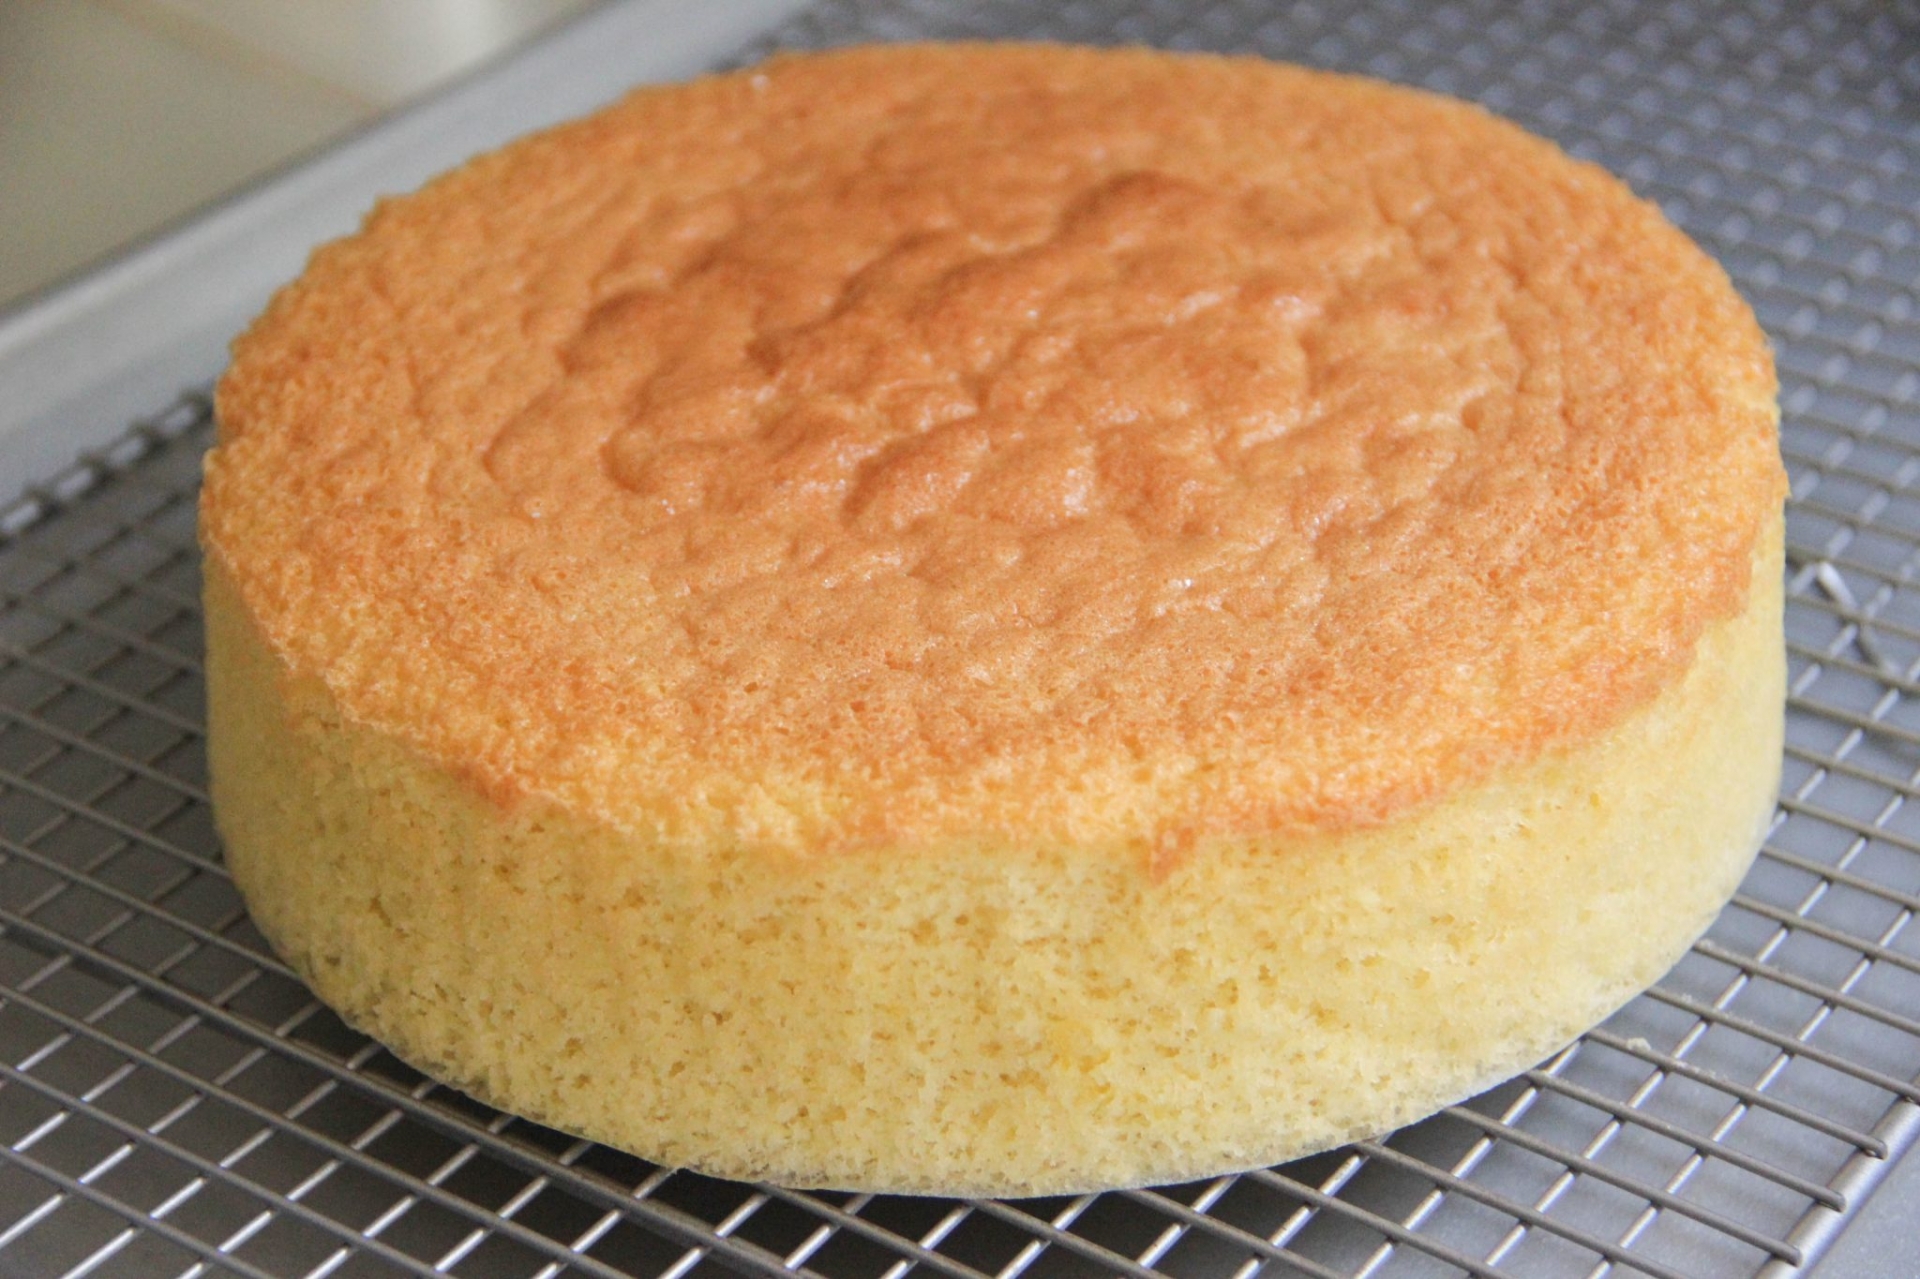 Sponge cake có kết cấu cứng cáp, chắc chắn hơn chiffon cake.